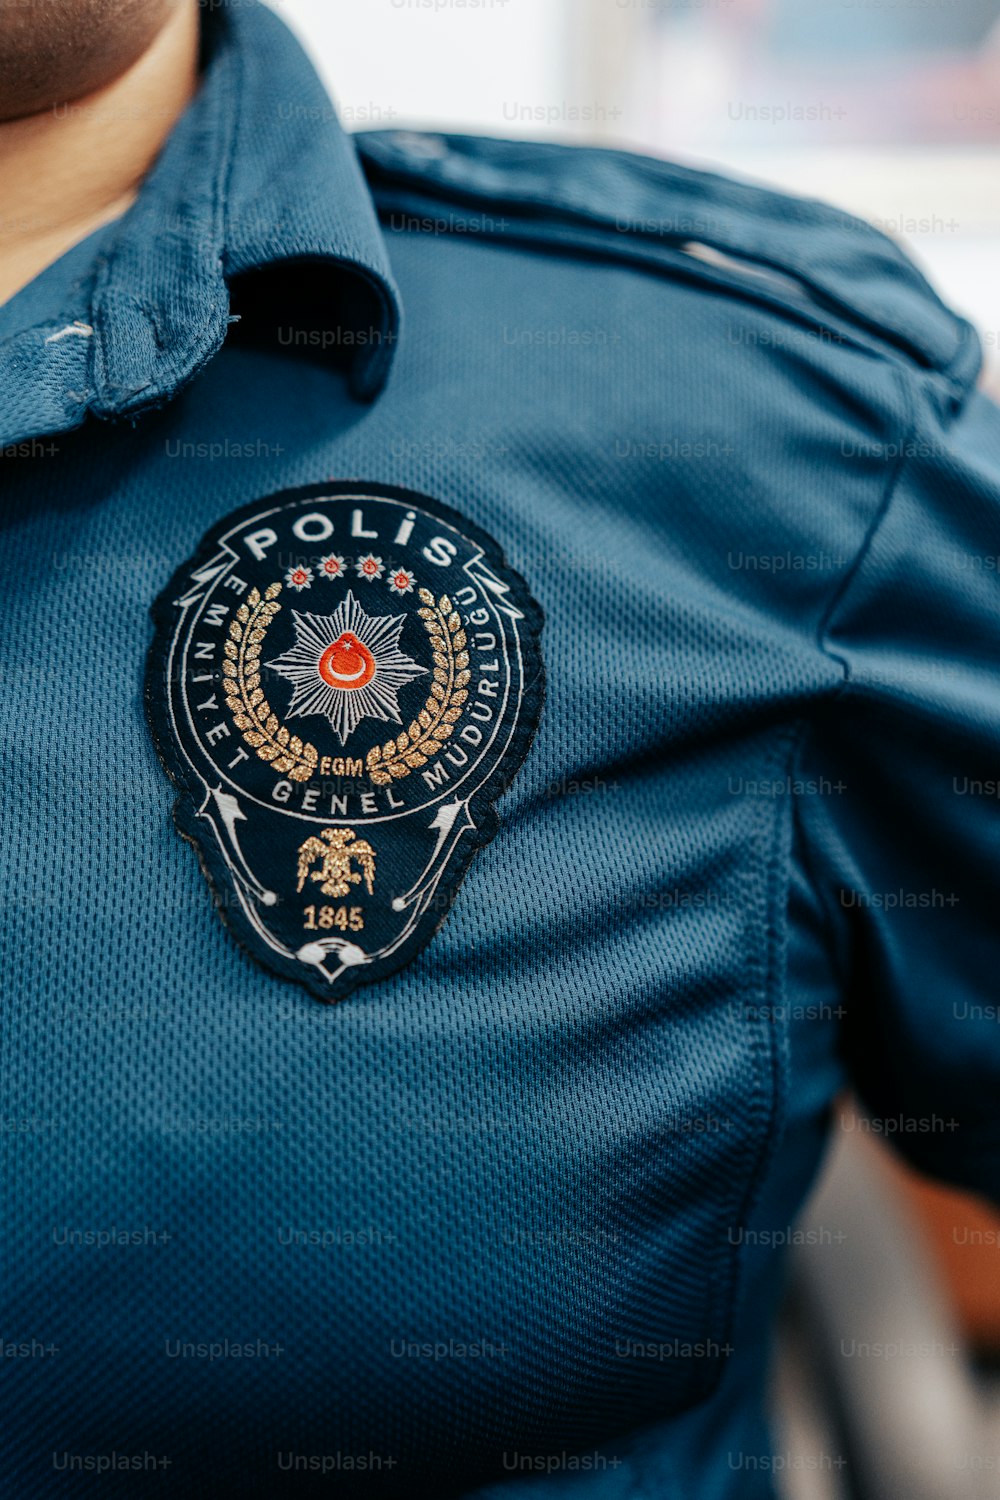 Un oficial de policía lleva un uniforme azul